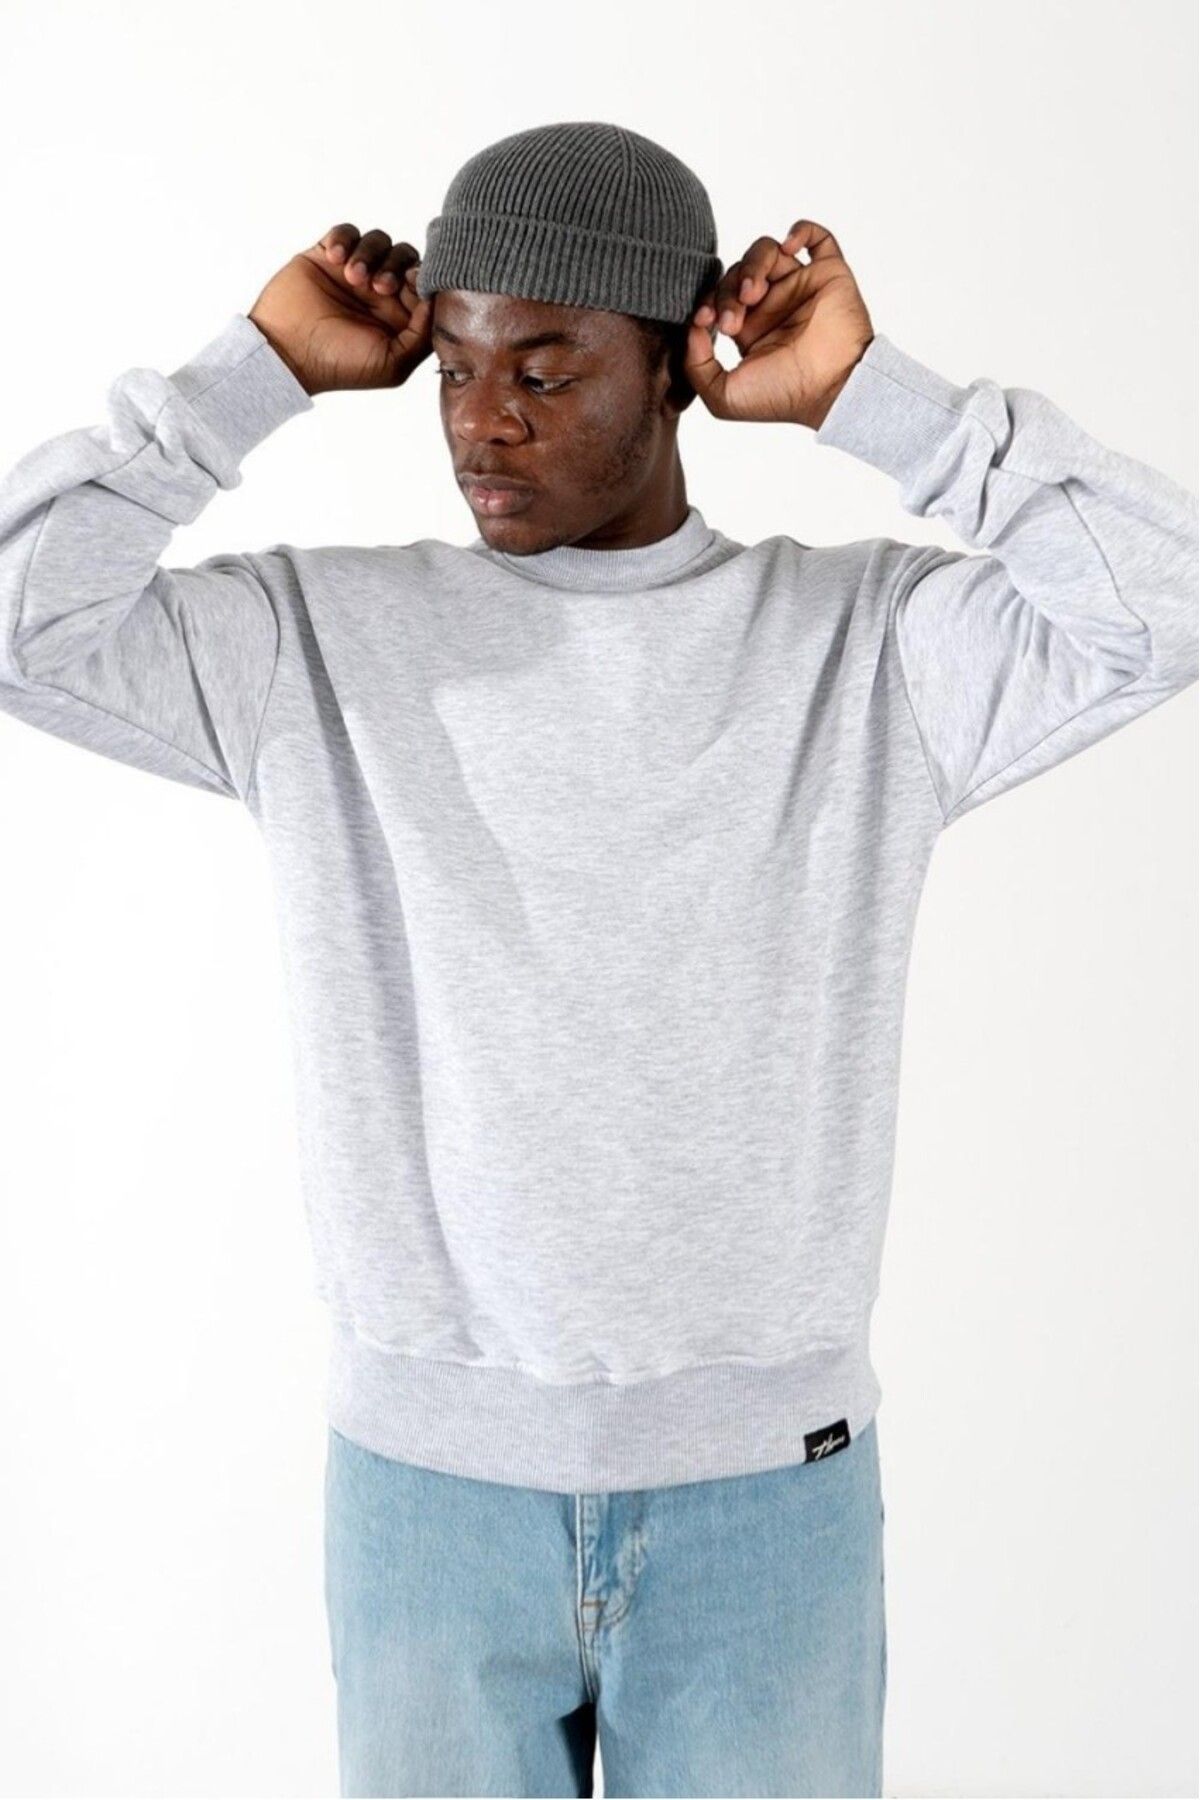 HYPERS Urban Style Erkek Sweatshirt Us1108gra